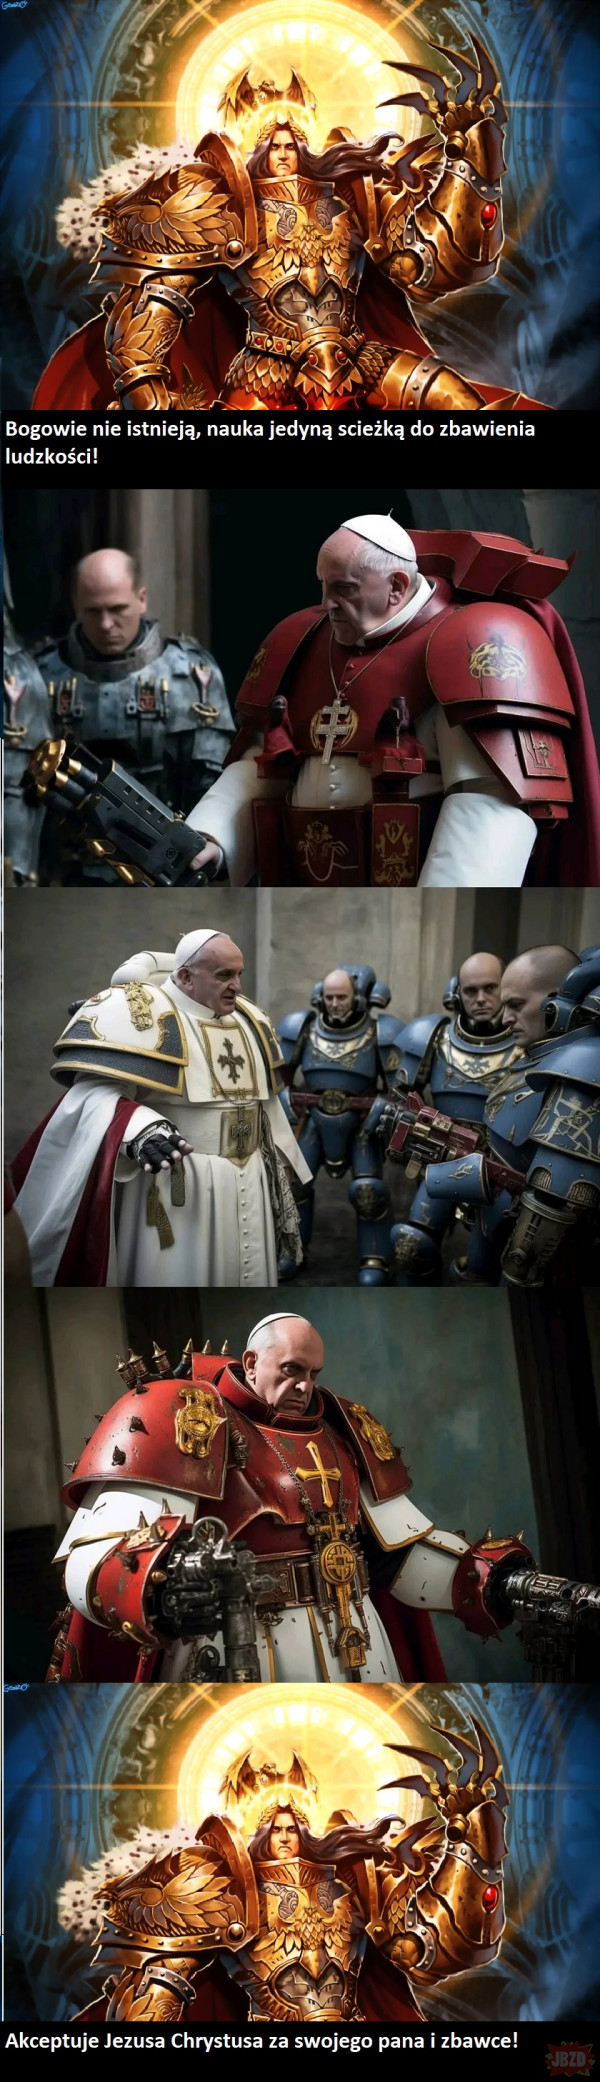 Kiedy Warhammer spotyka papieża